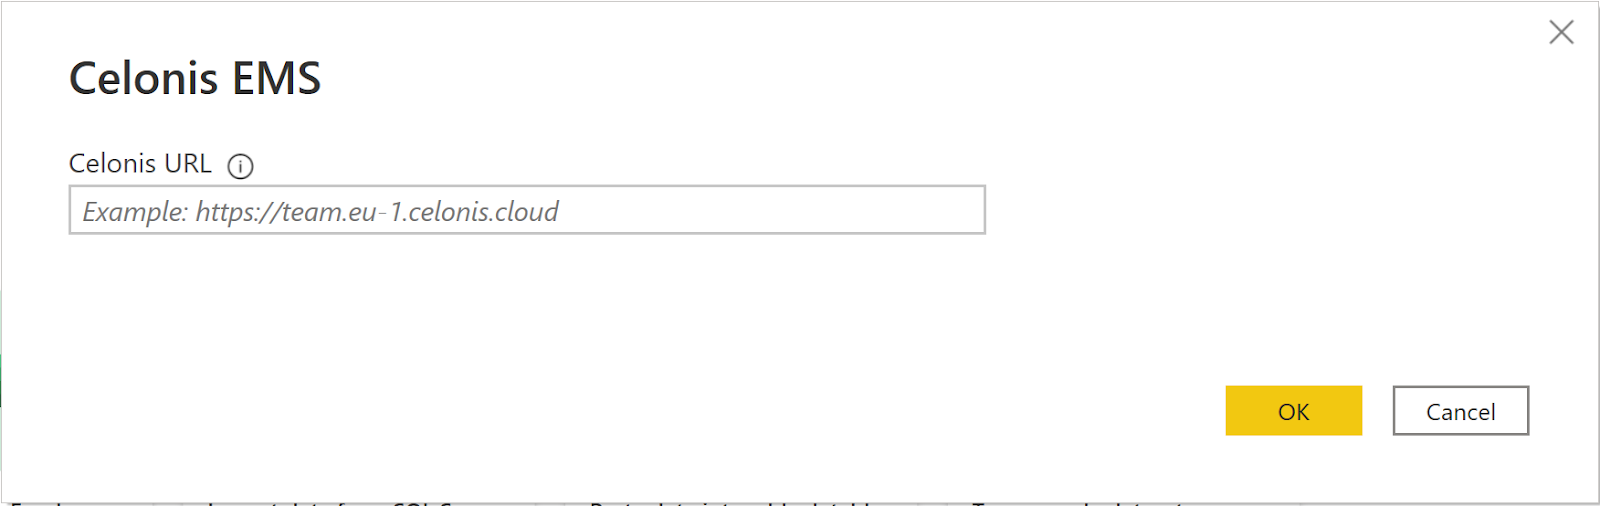 Captura de tela da caixa de diálogo Celonis EMS com a URL do Celonis EMS inserida.